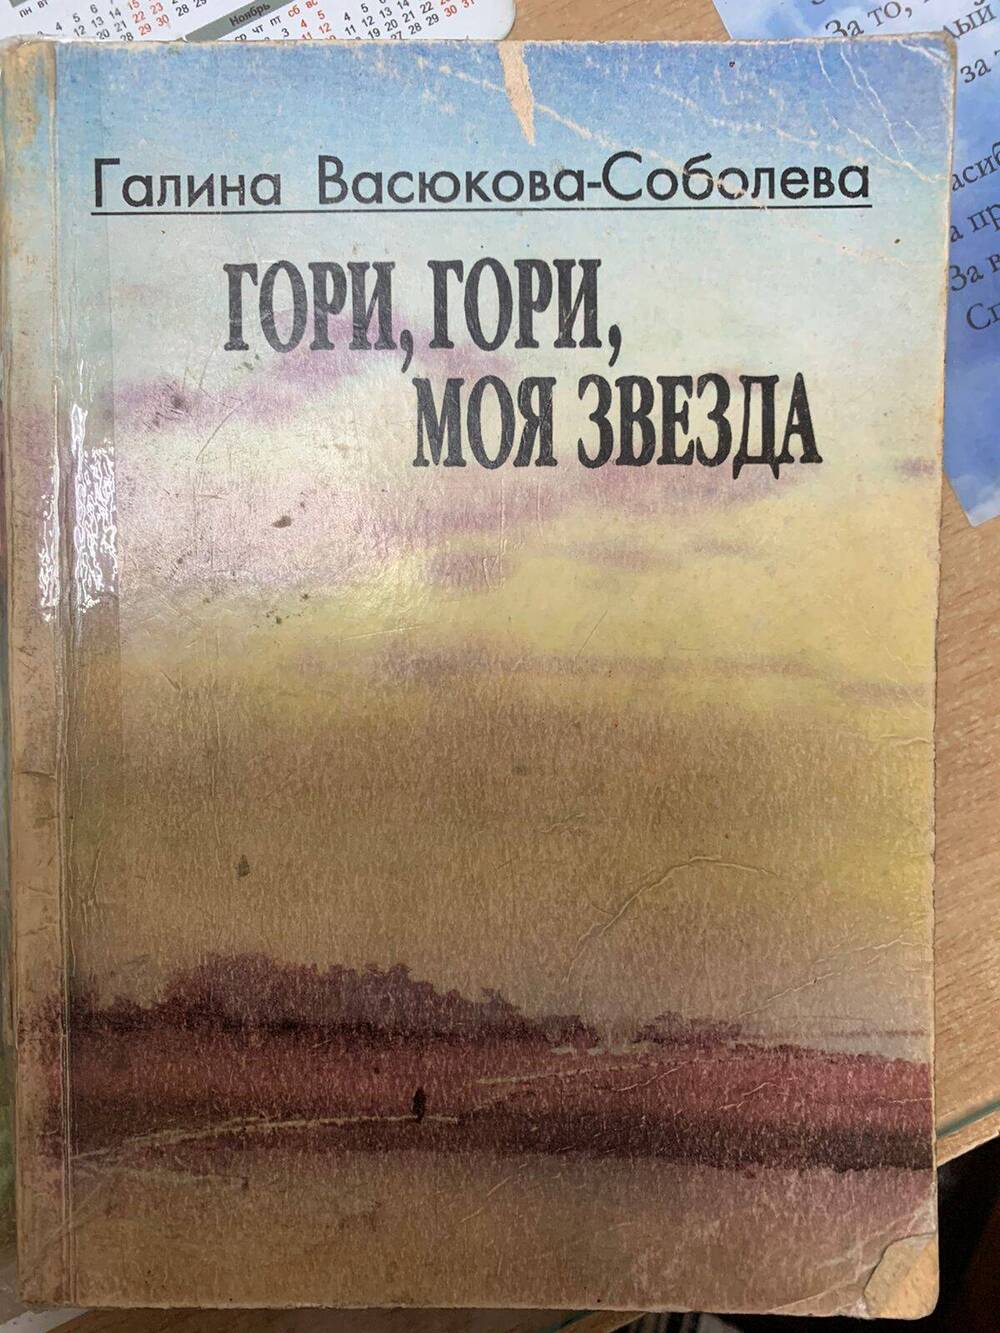 Книга Г.Г. Васюковой-Соболевой Гори, гори, моя звезда